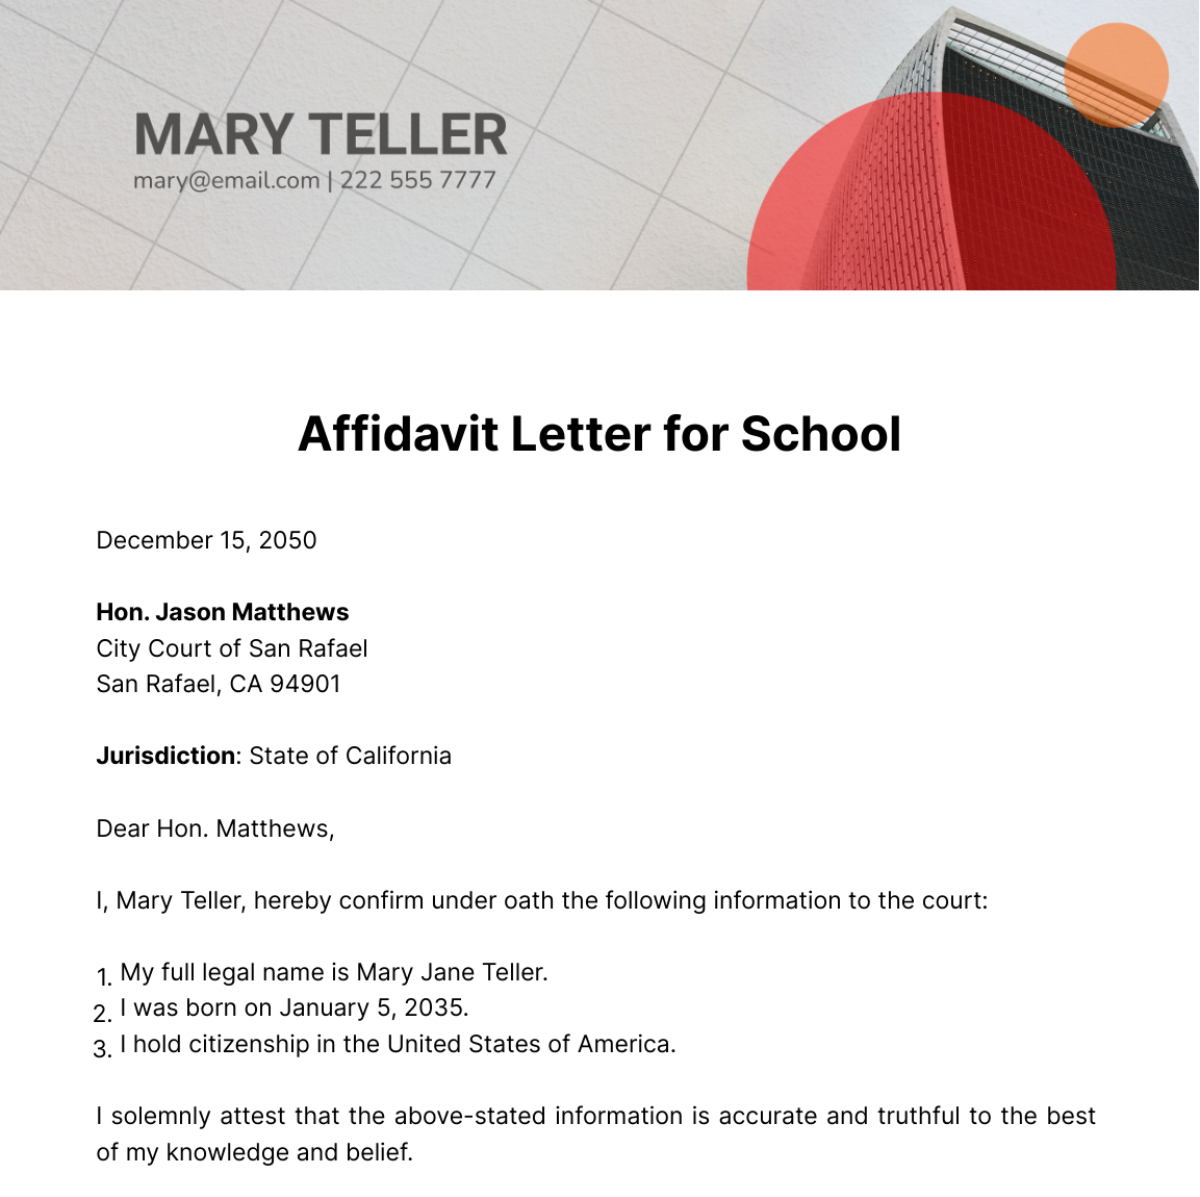 Affidavit Letter for School Template